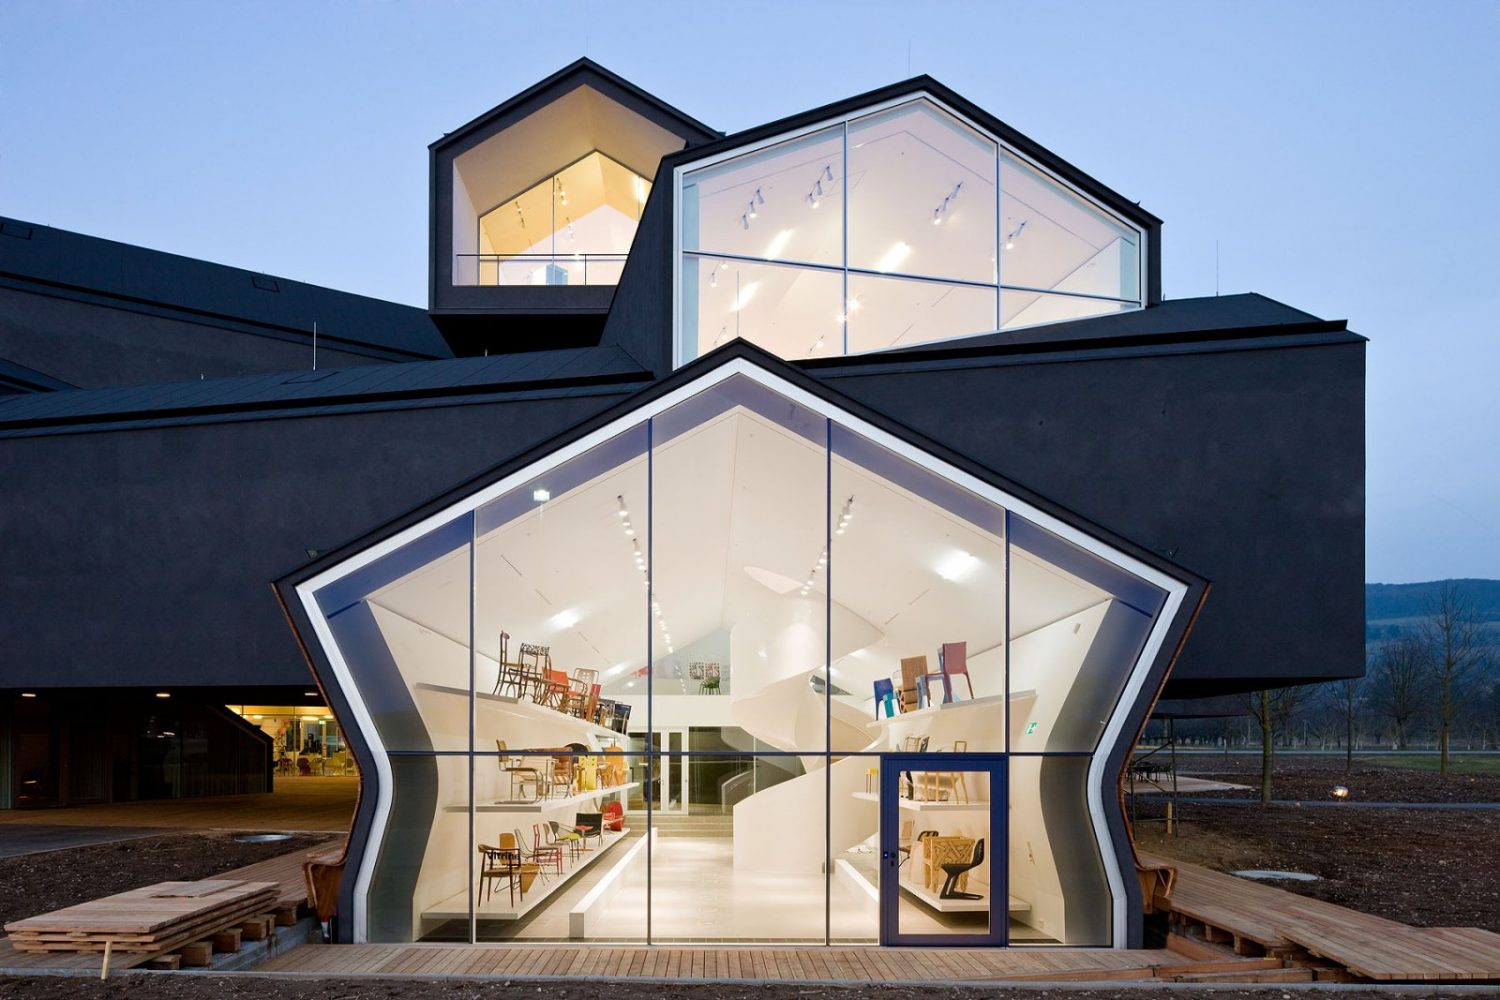 VitraHaus | Extravagant Building by Herzog & De Meuron